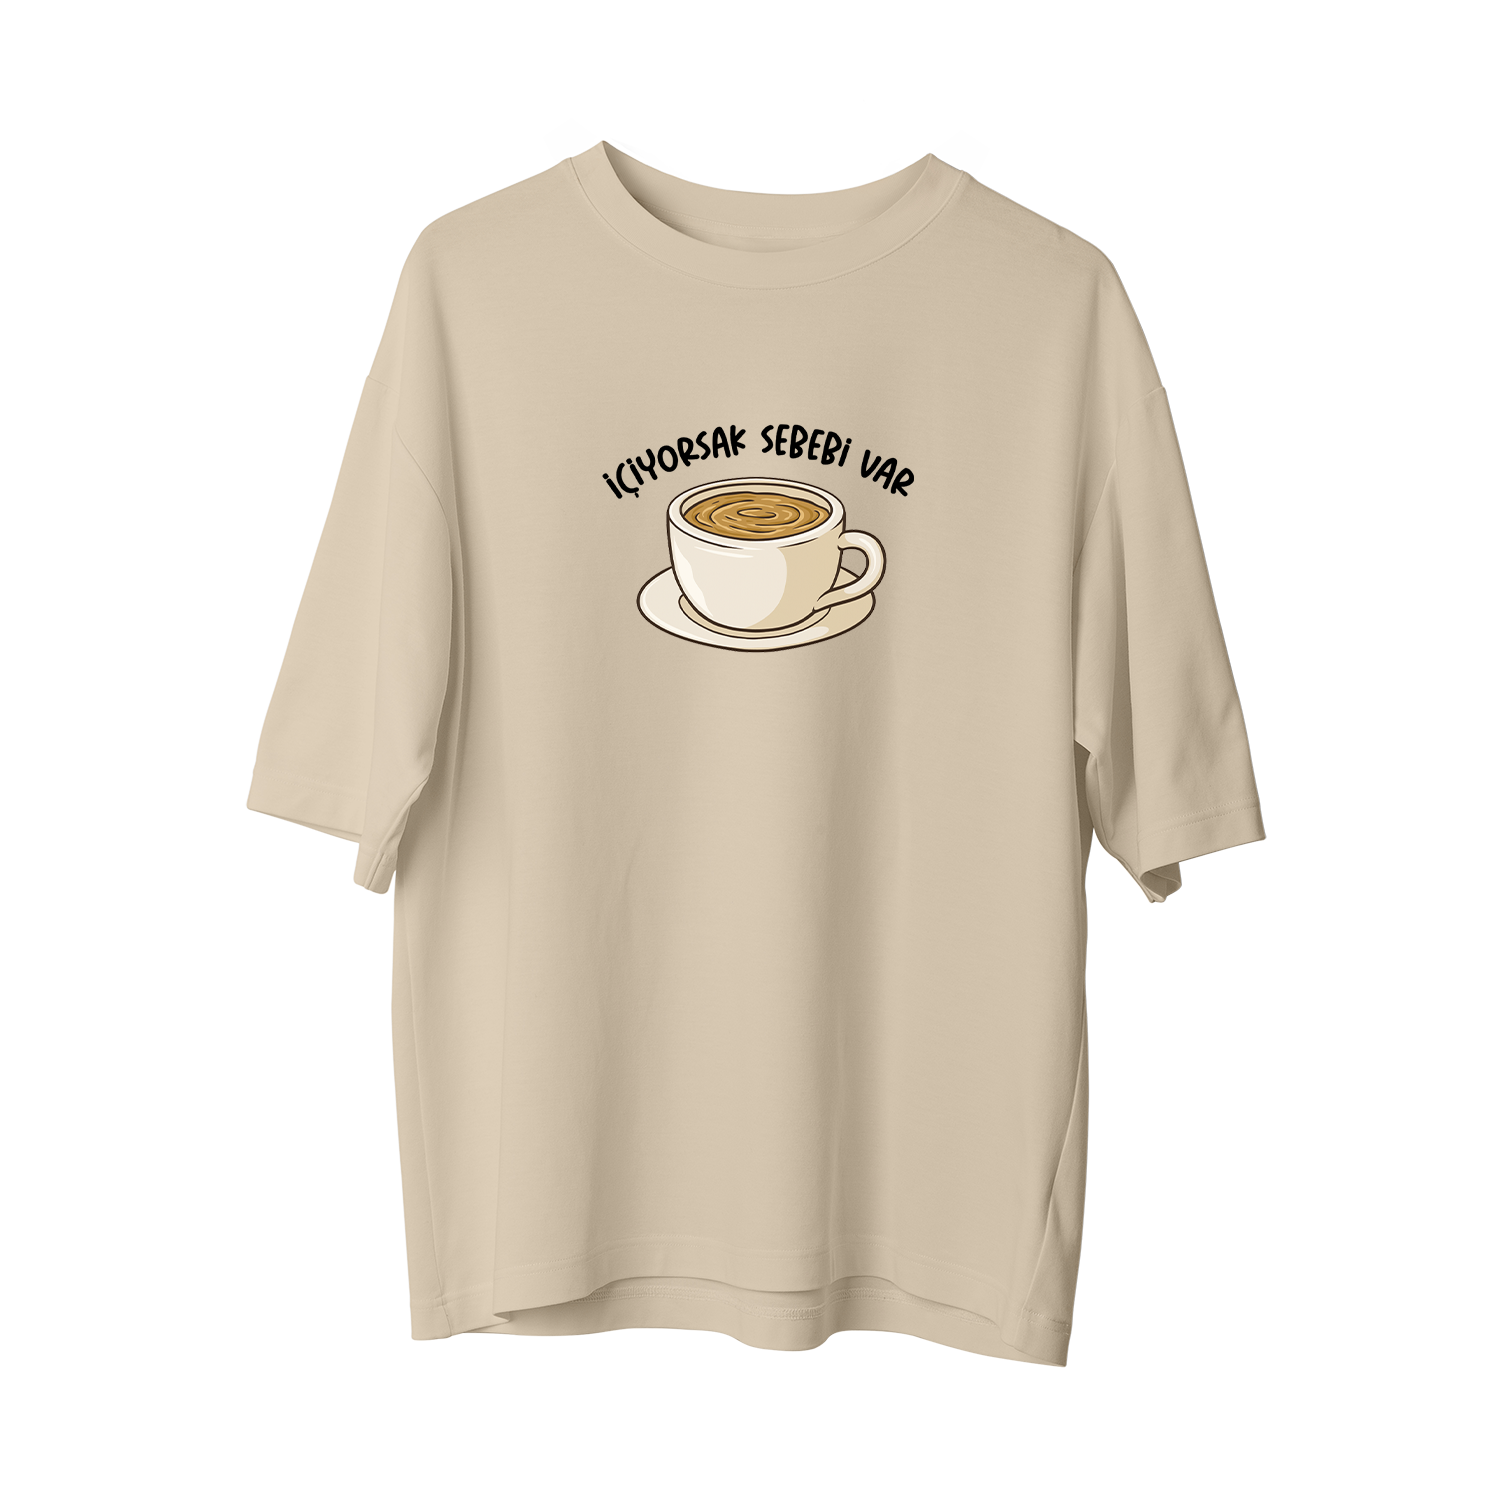 İÇİYORSAK SEBEBİ VAR - Oversize T-Shirt